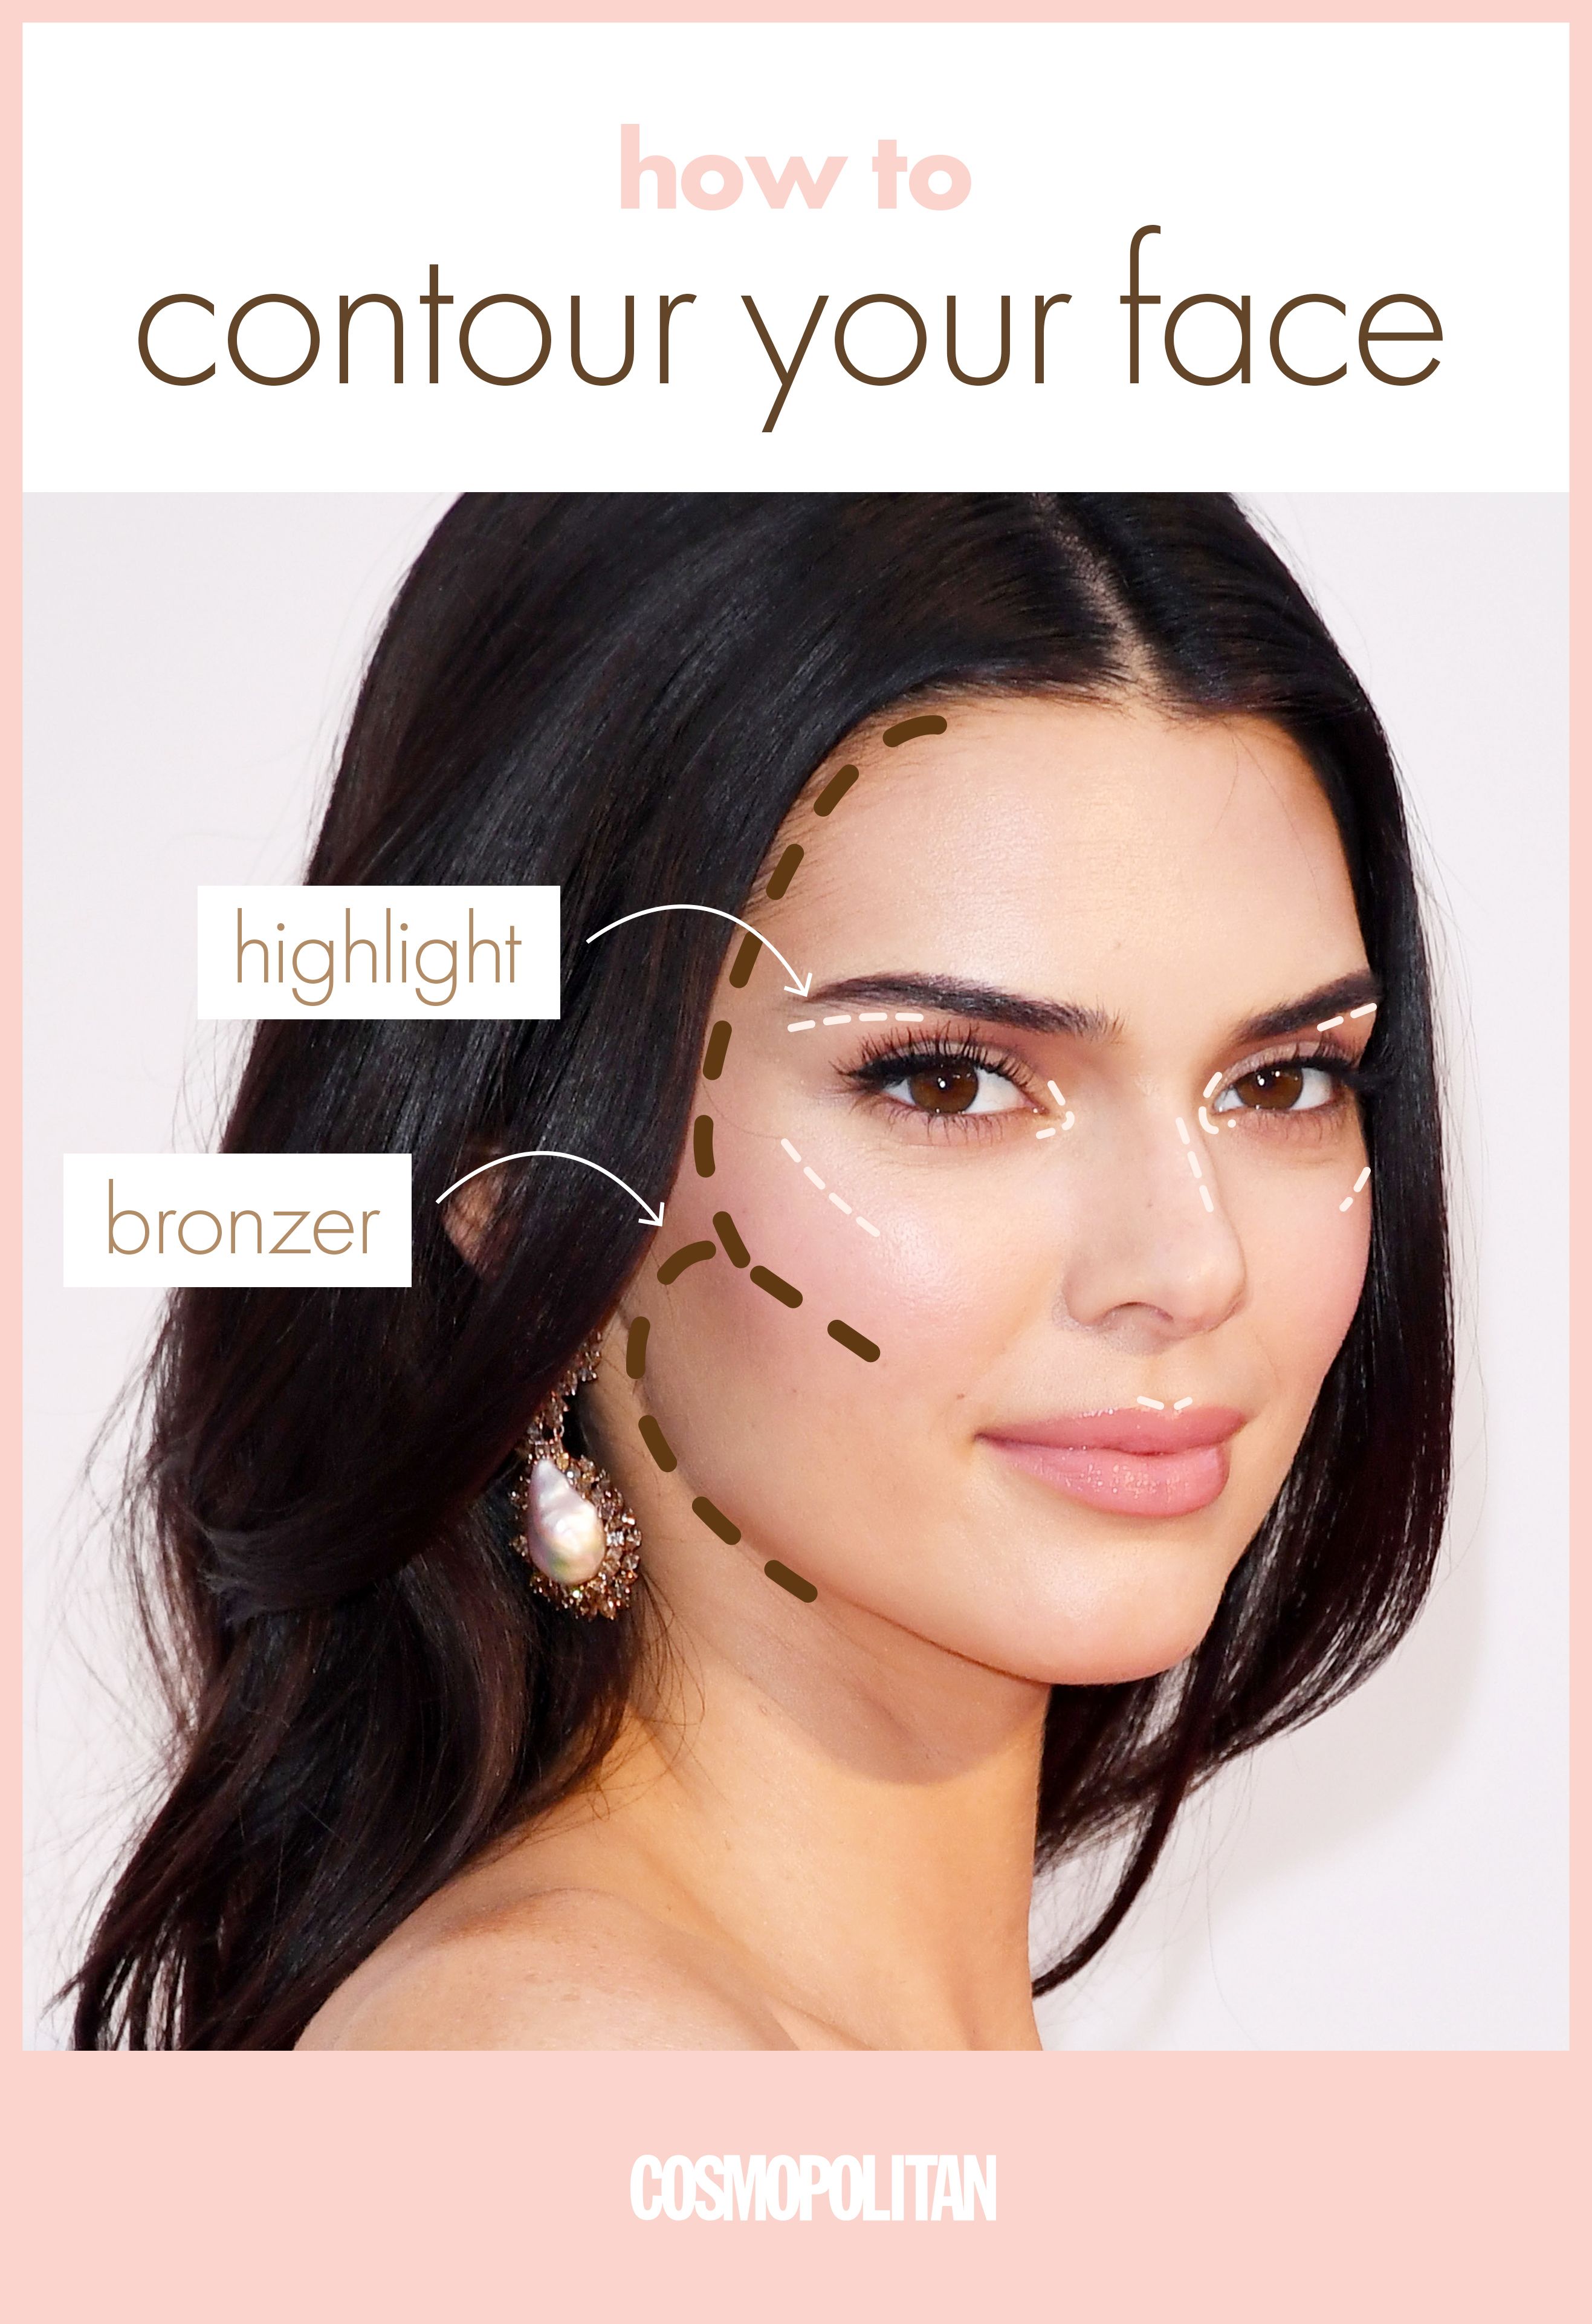 contour definition makeup